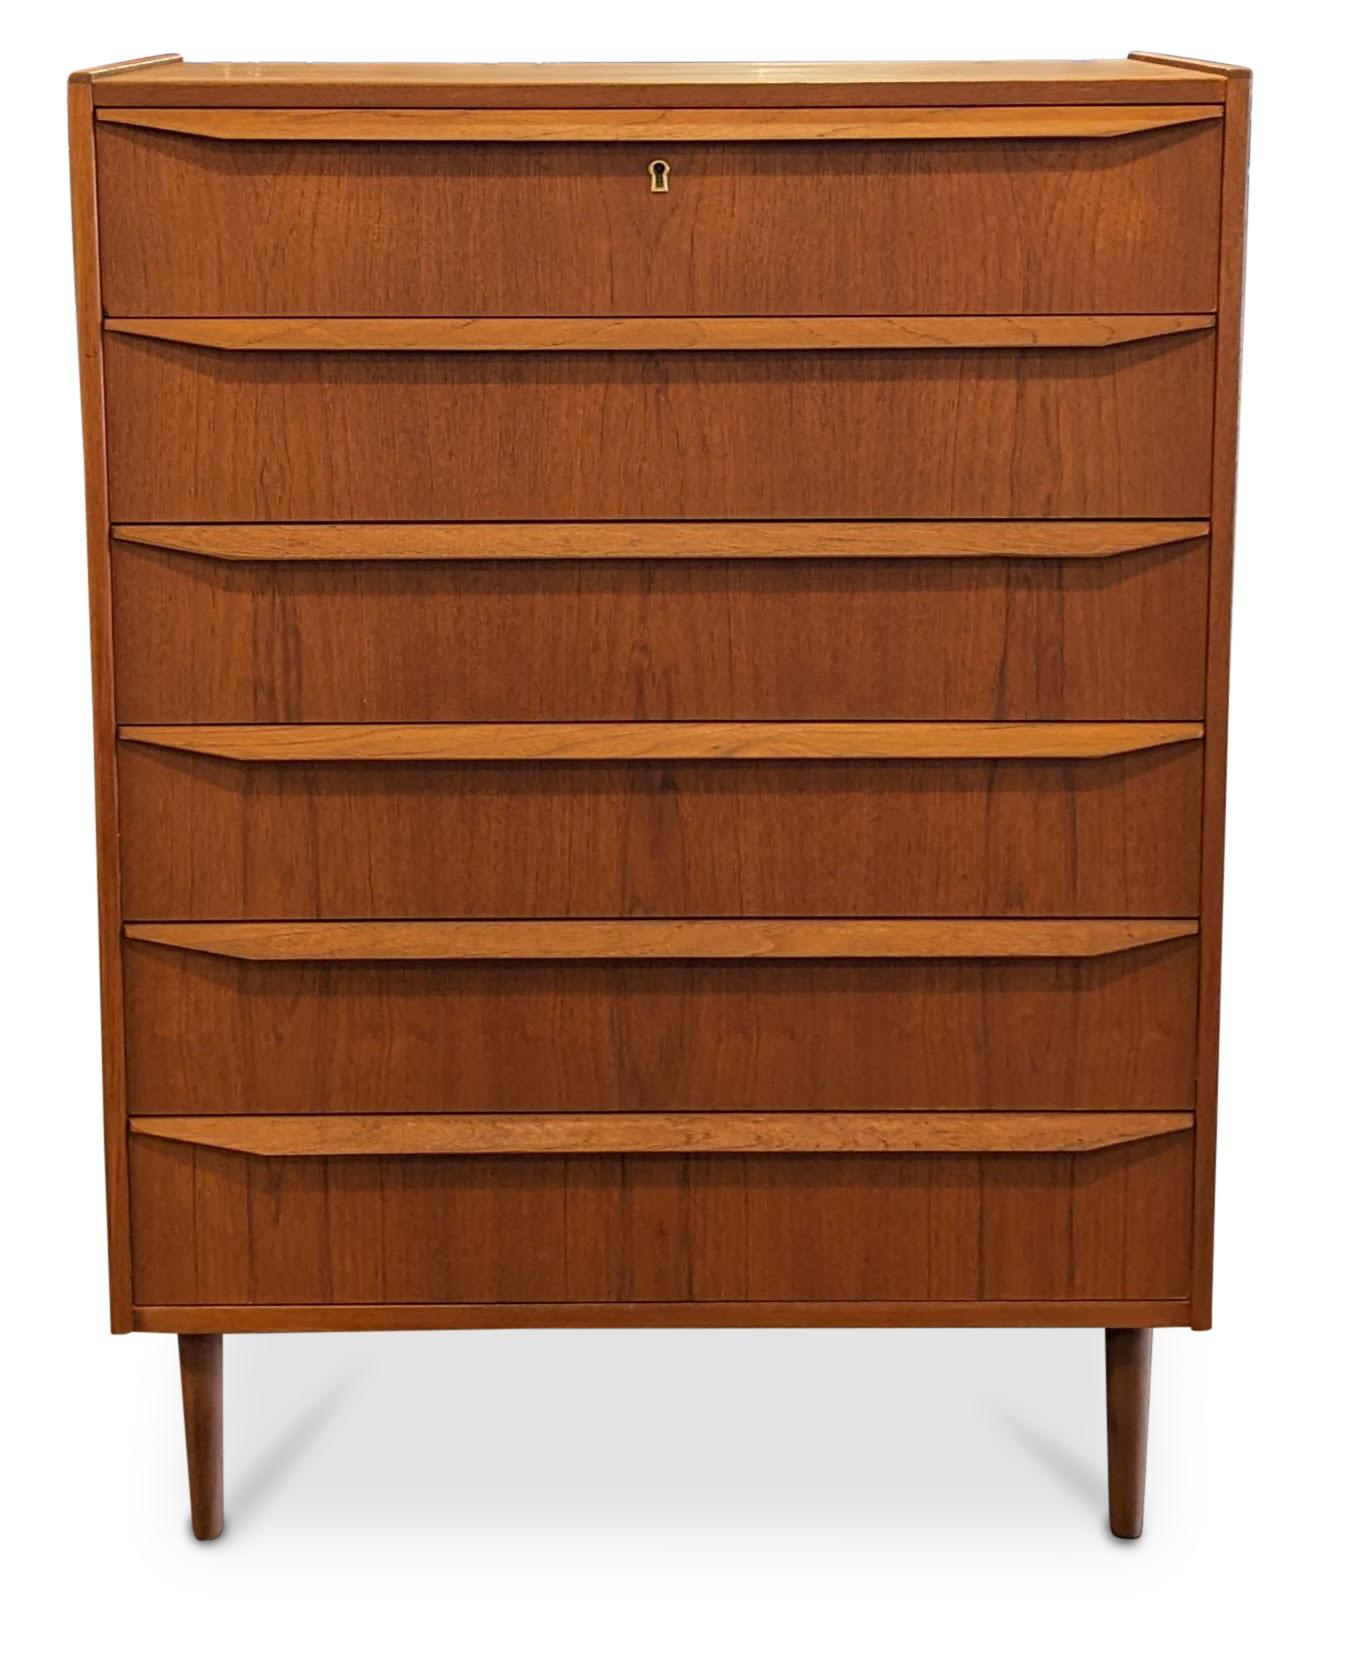 Mid-20th Century Vintage Danish Mid Century Teak Dresser - 072325